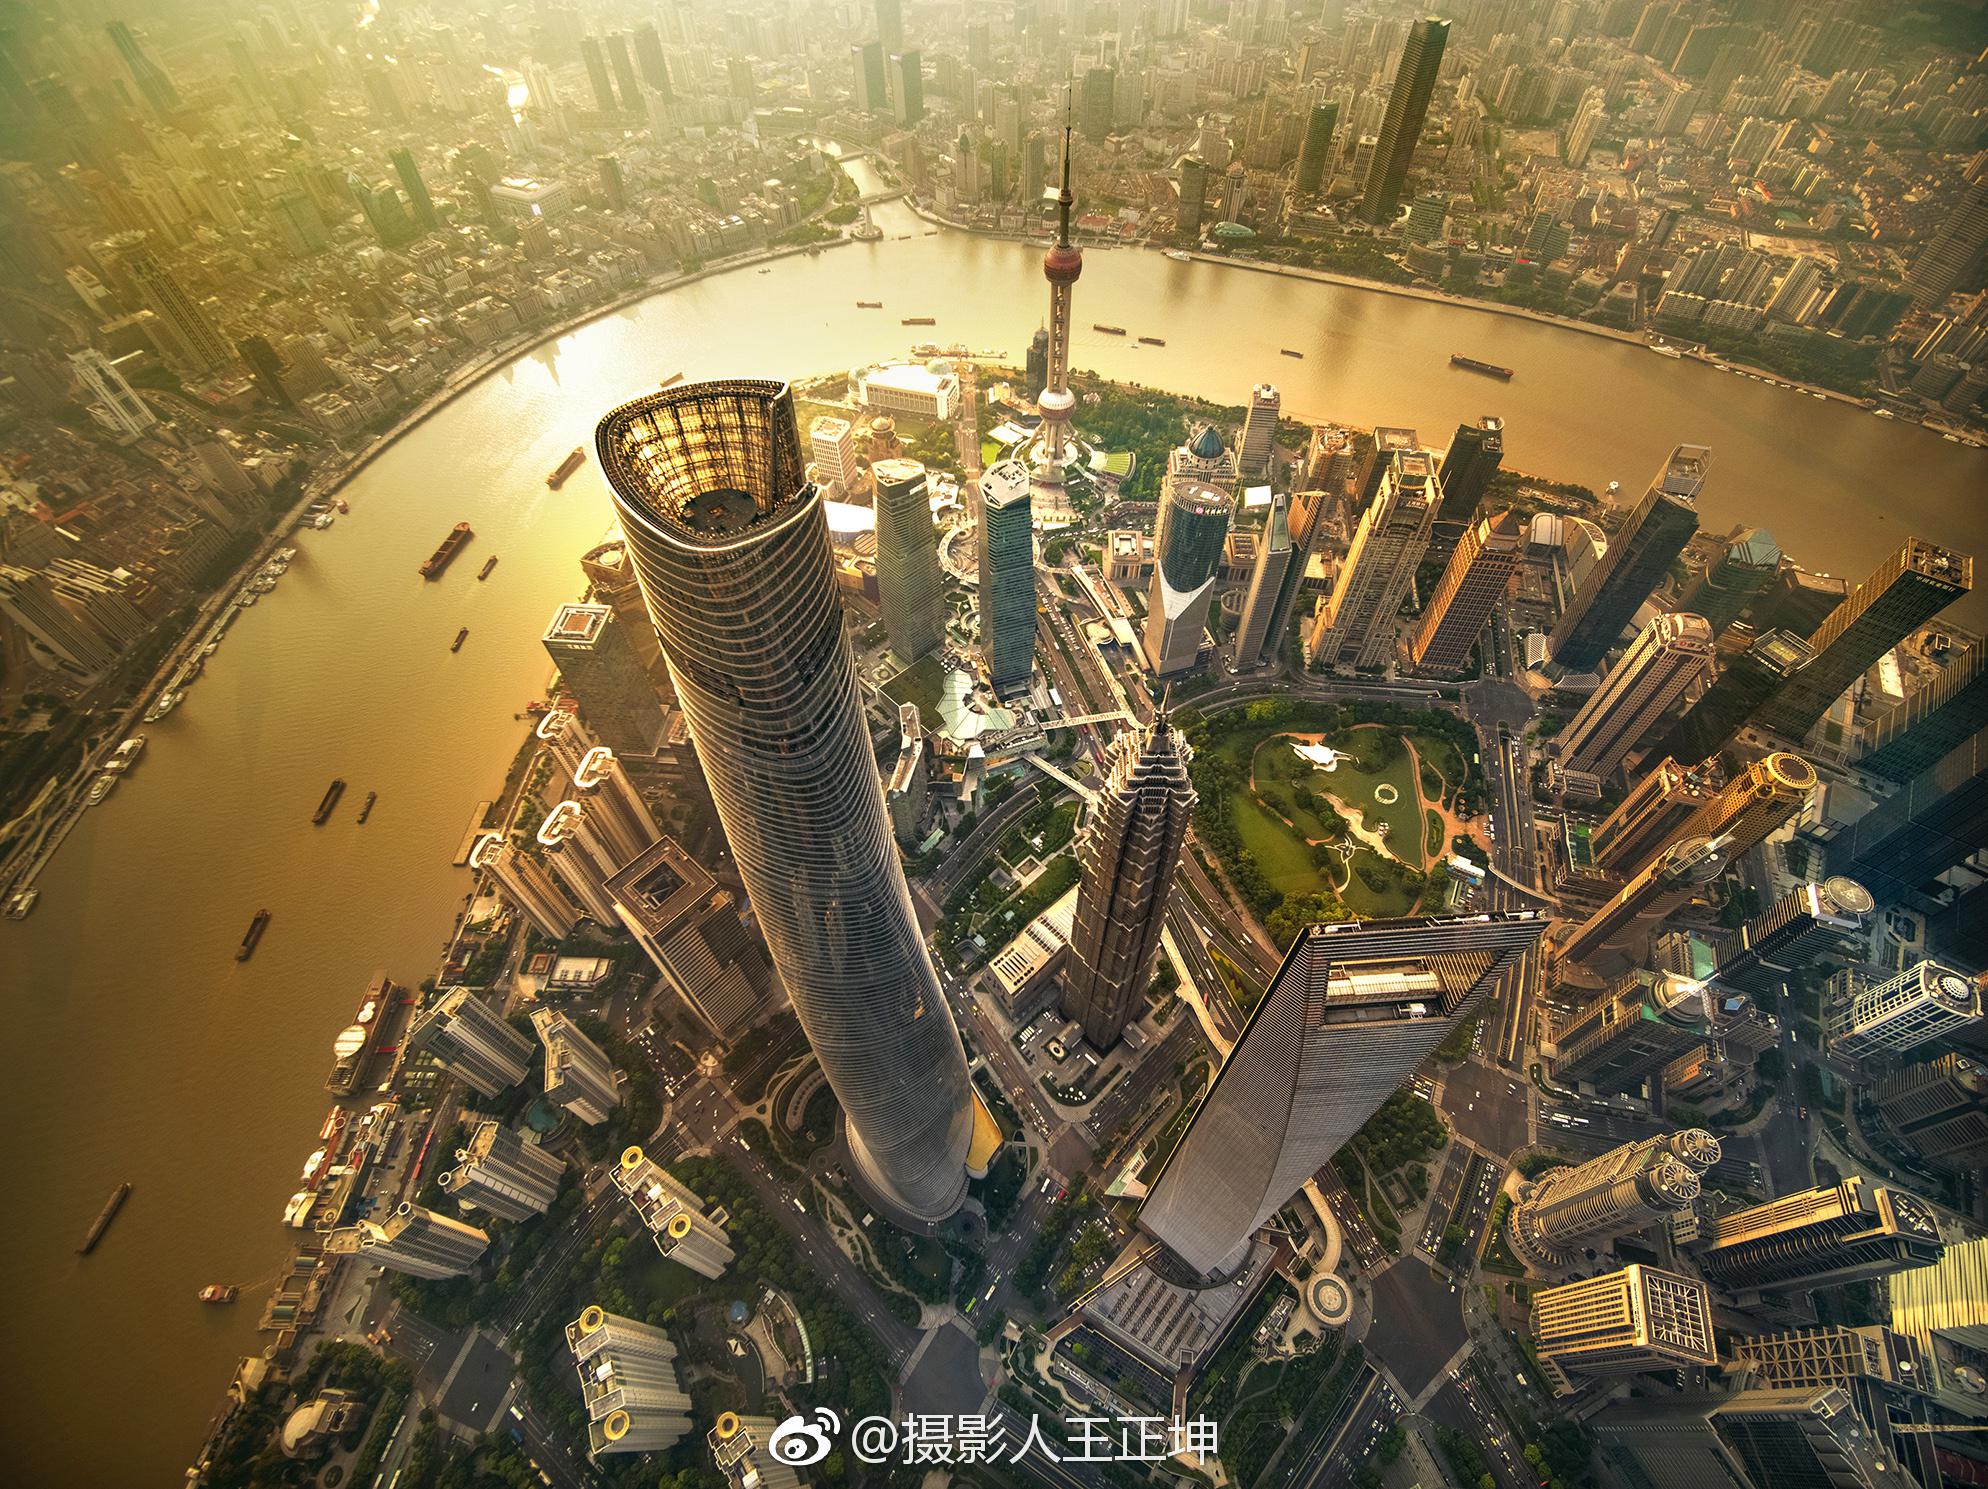 央视新闻@上海发布@上海市天气@上海影像@上海城事资讯@上海中心